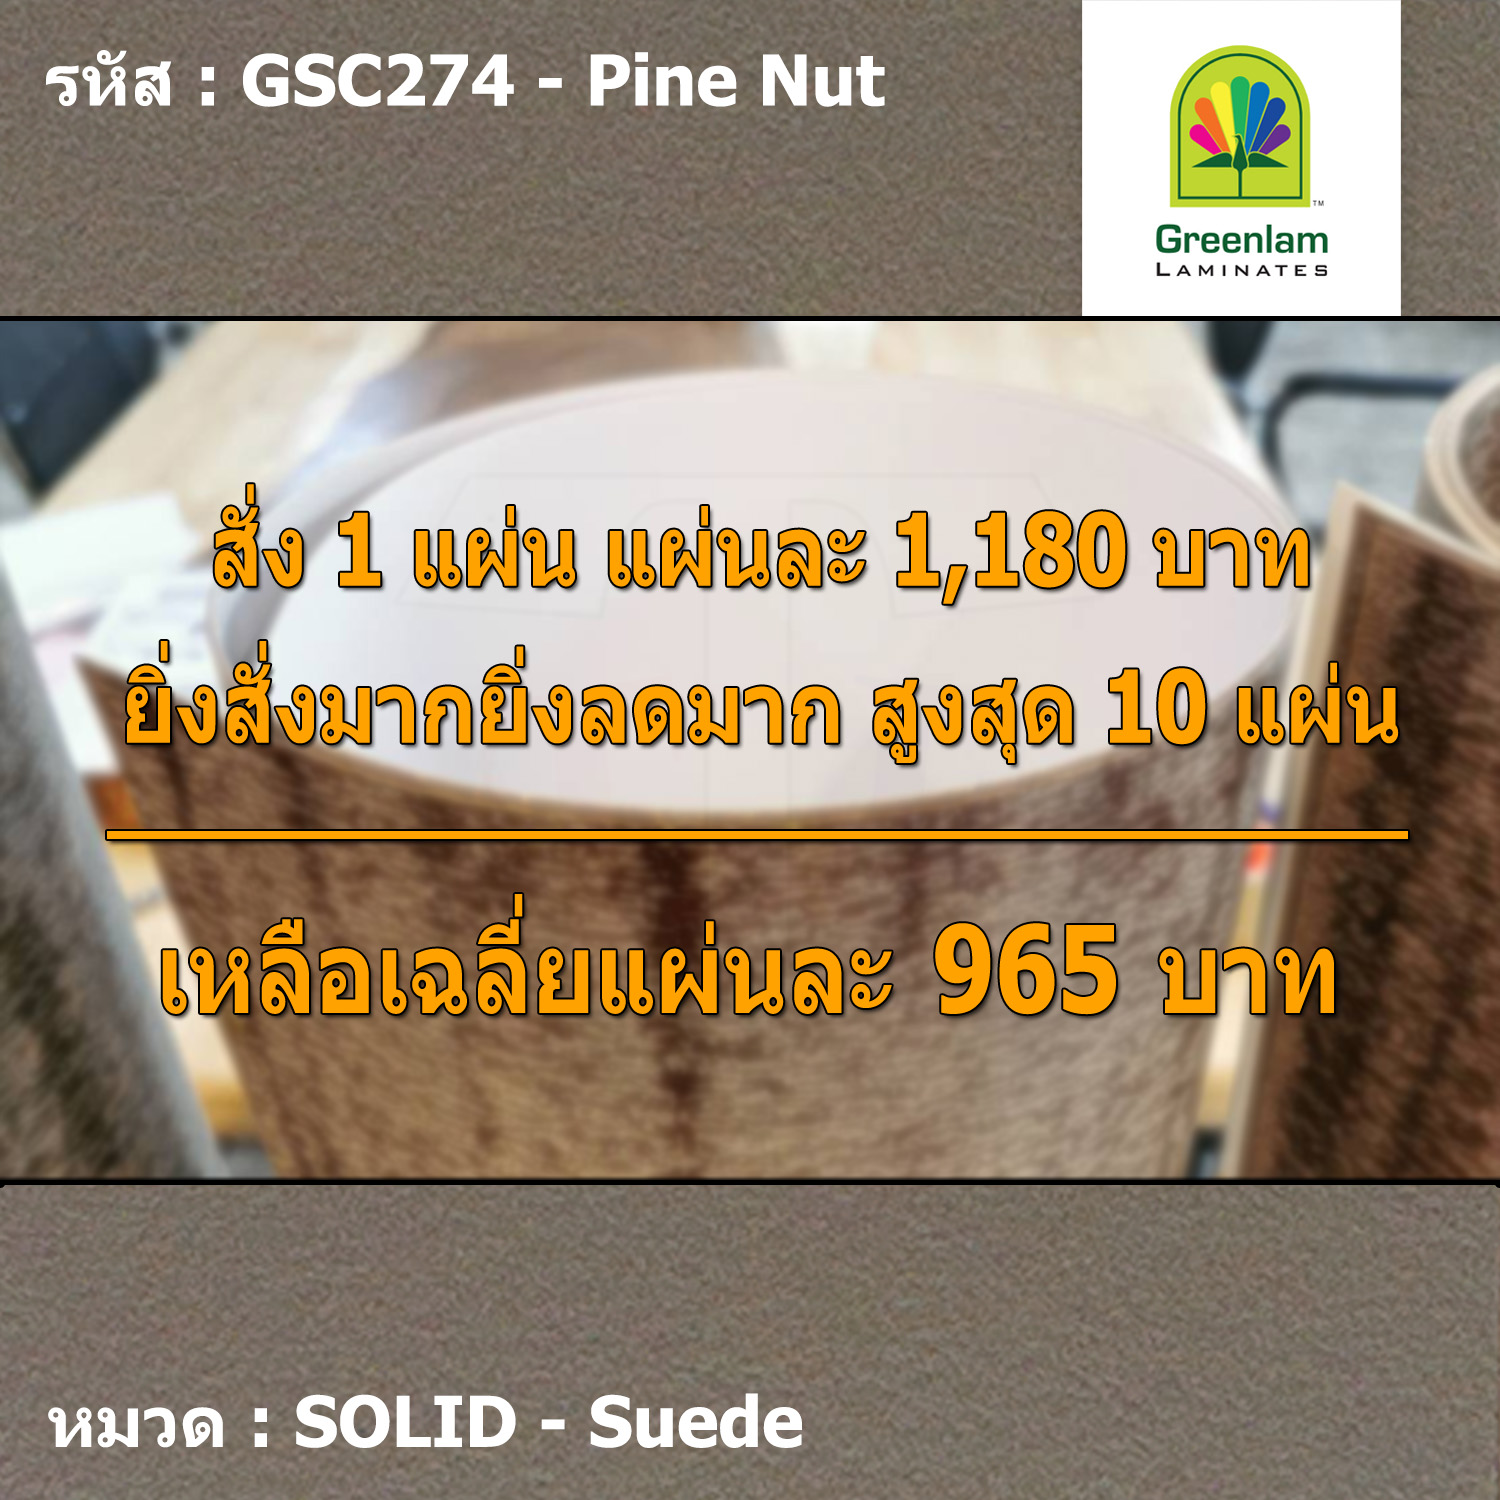 แผ่นโฟเมก้า แผ่นลามิเนต ยี่ห้อ Greenlam สีน้ำตาลเทา รหัส GSC274 Pine Nut พื้นผิวลาย Suede ขนาด 1220 x 2440 มม. หนา 0.80 มม. ใช้สำหรับงานตกแต่งภายใน งานปิดผิวเฟอร์นิเจอร์ ผนัง และอื่นๆ เพื่อเพิ่มความสวยงาม formica laminate GSC274